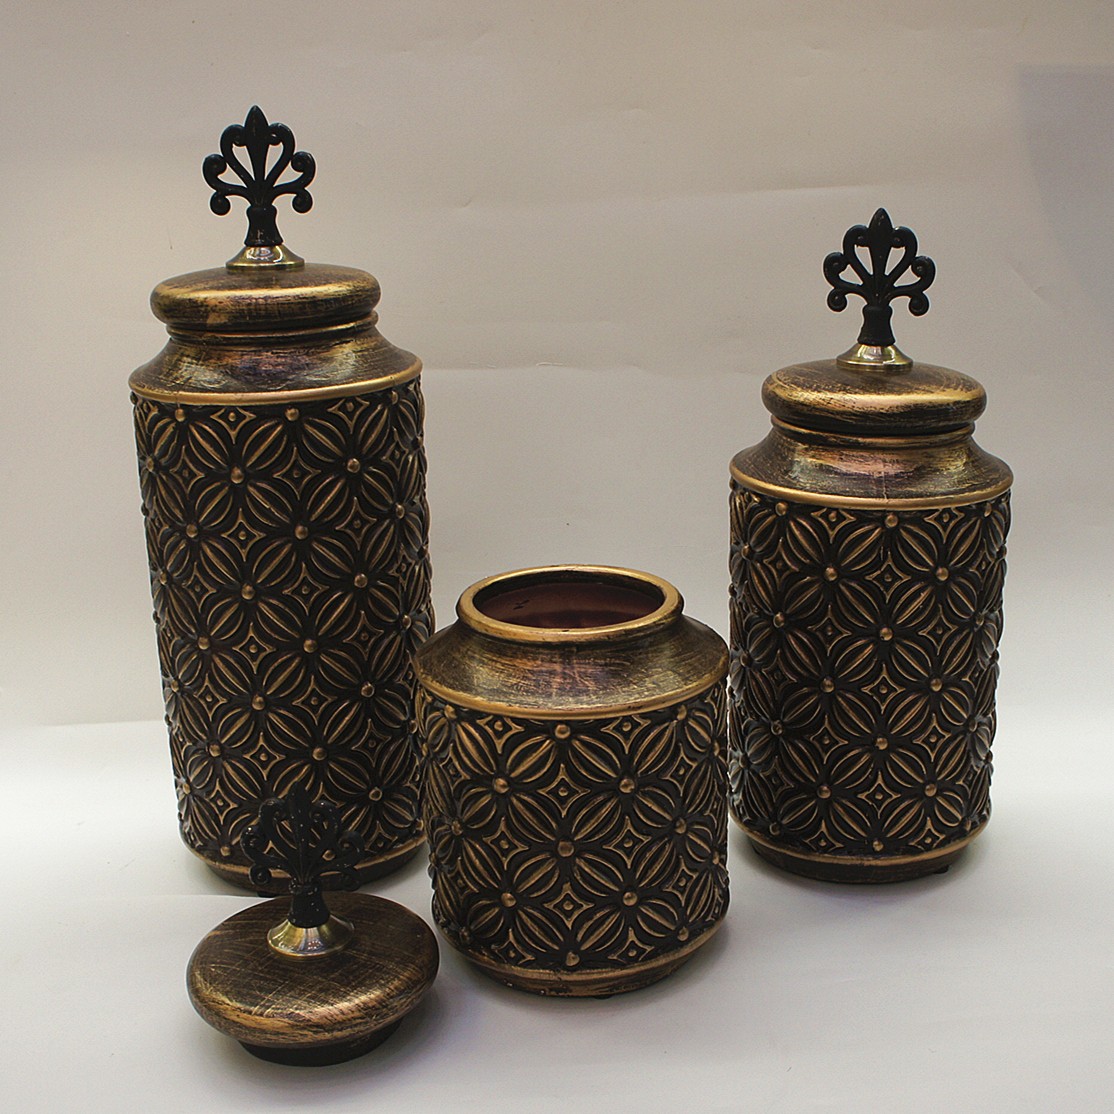 新款美式陶瓷花瓶三件套 创意酒店软装摆件 手绘陶瓷干花瓶工艺8金堡花瓶详情图8